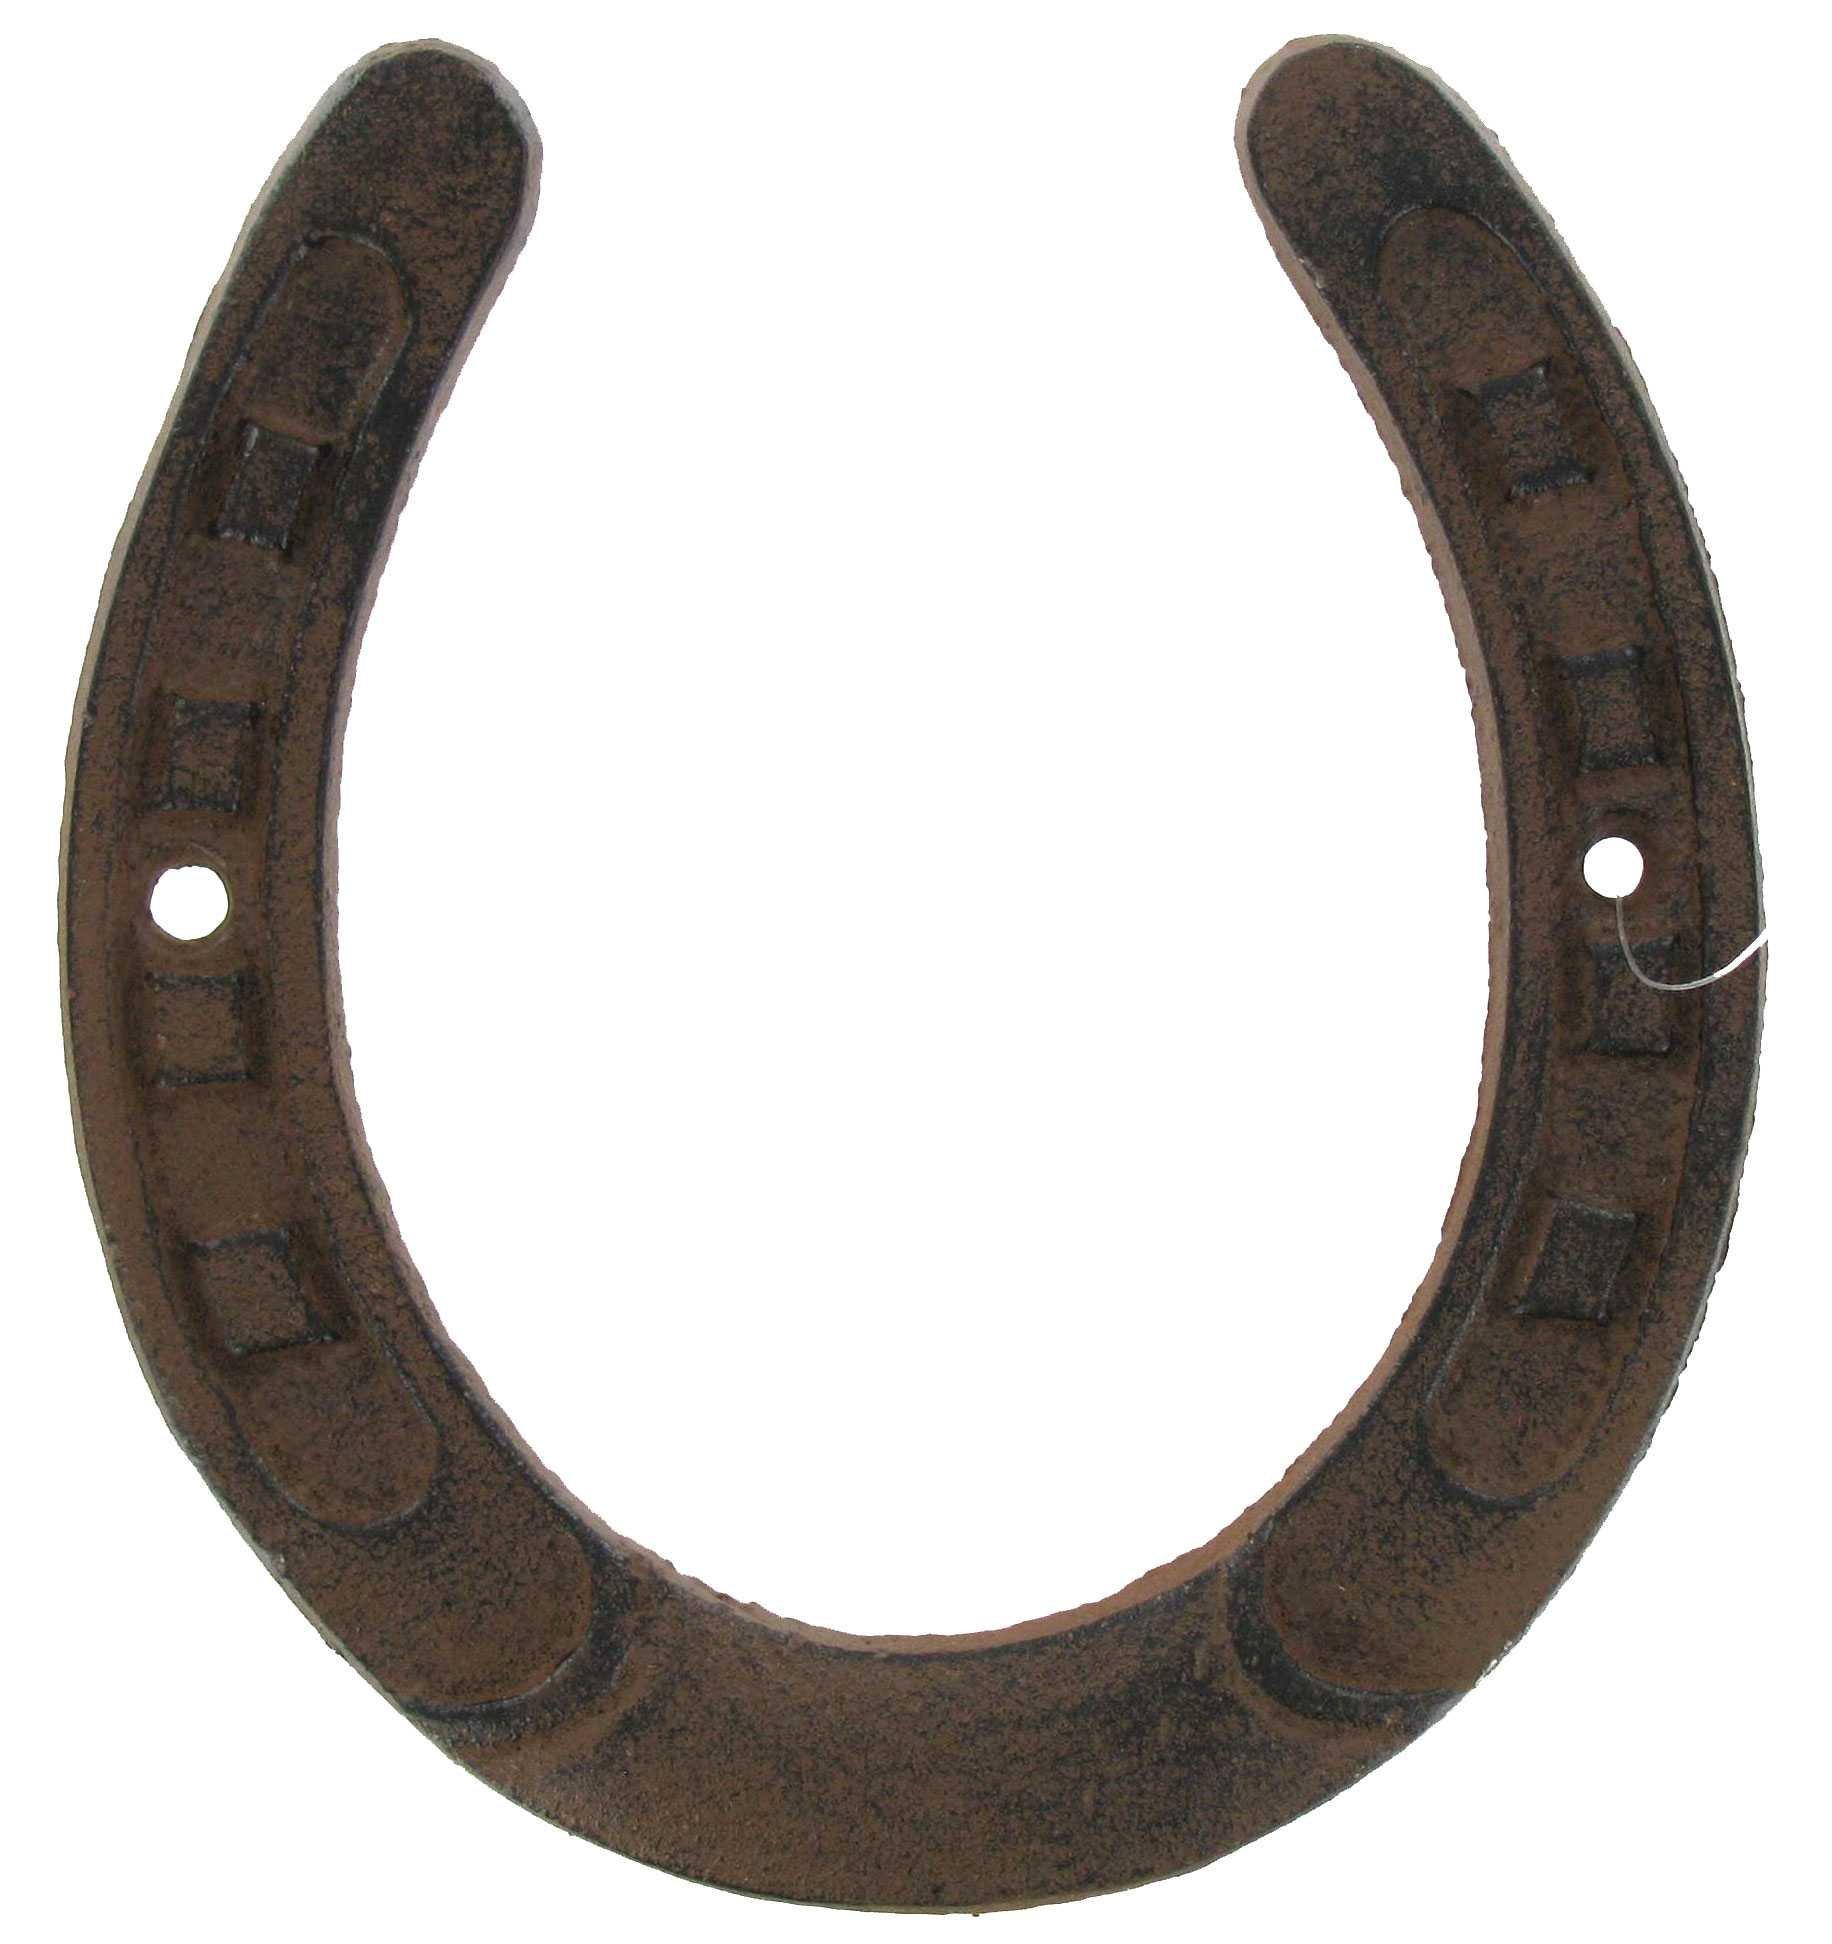 4 horseshoe decoration